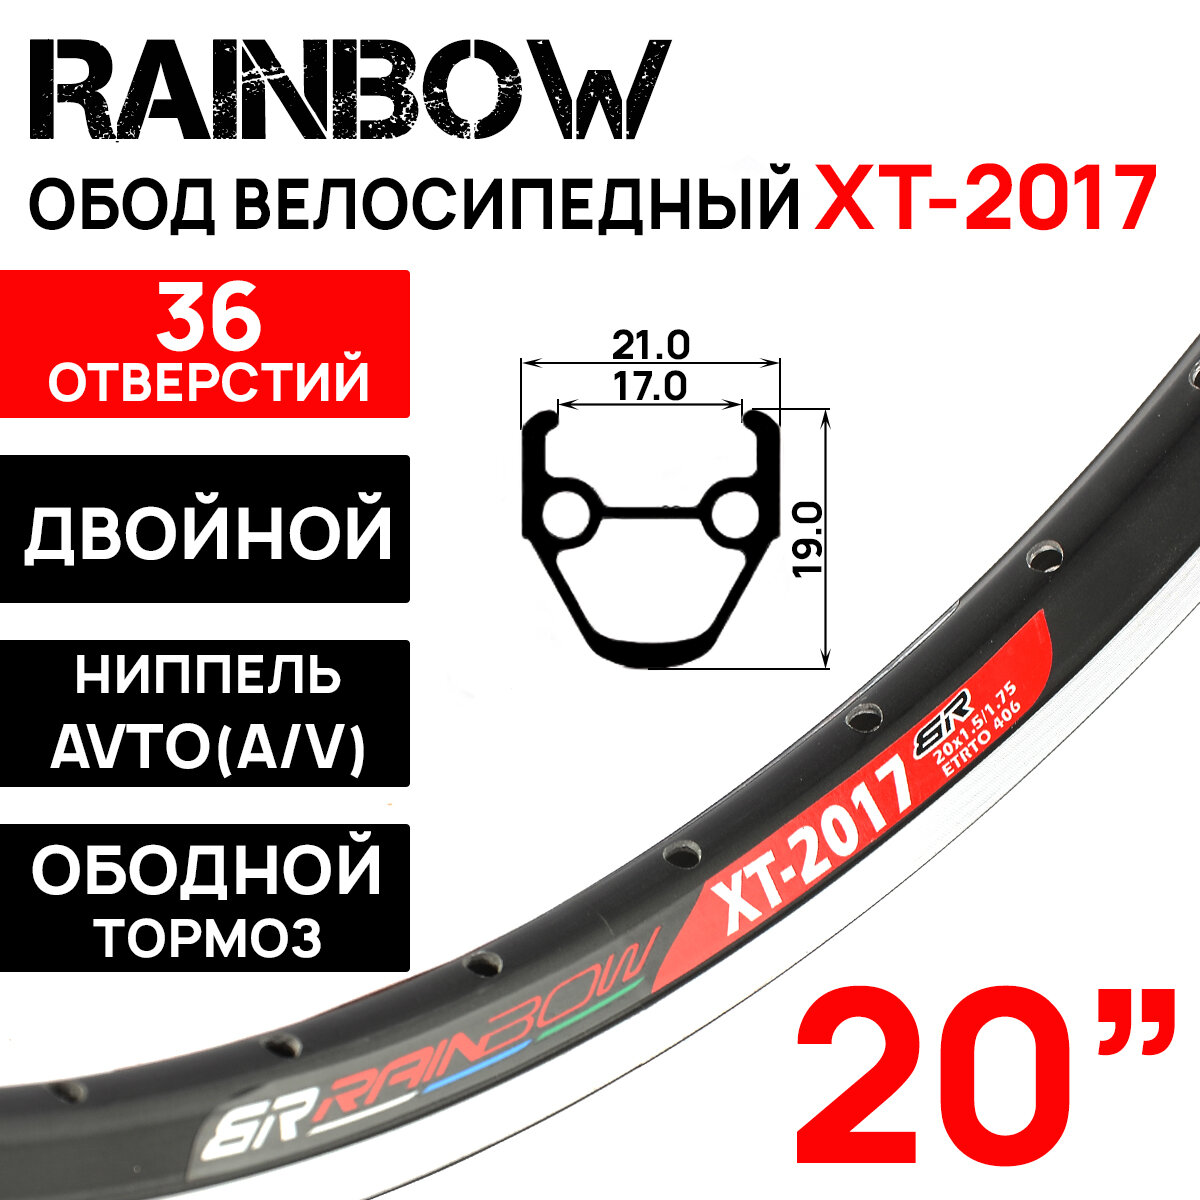 Обод двойной Rainbow XT-2017 20" (406х17С), 36 отверстий, под V-brake тормоз, ниппель A/V (авто), черный